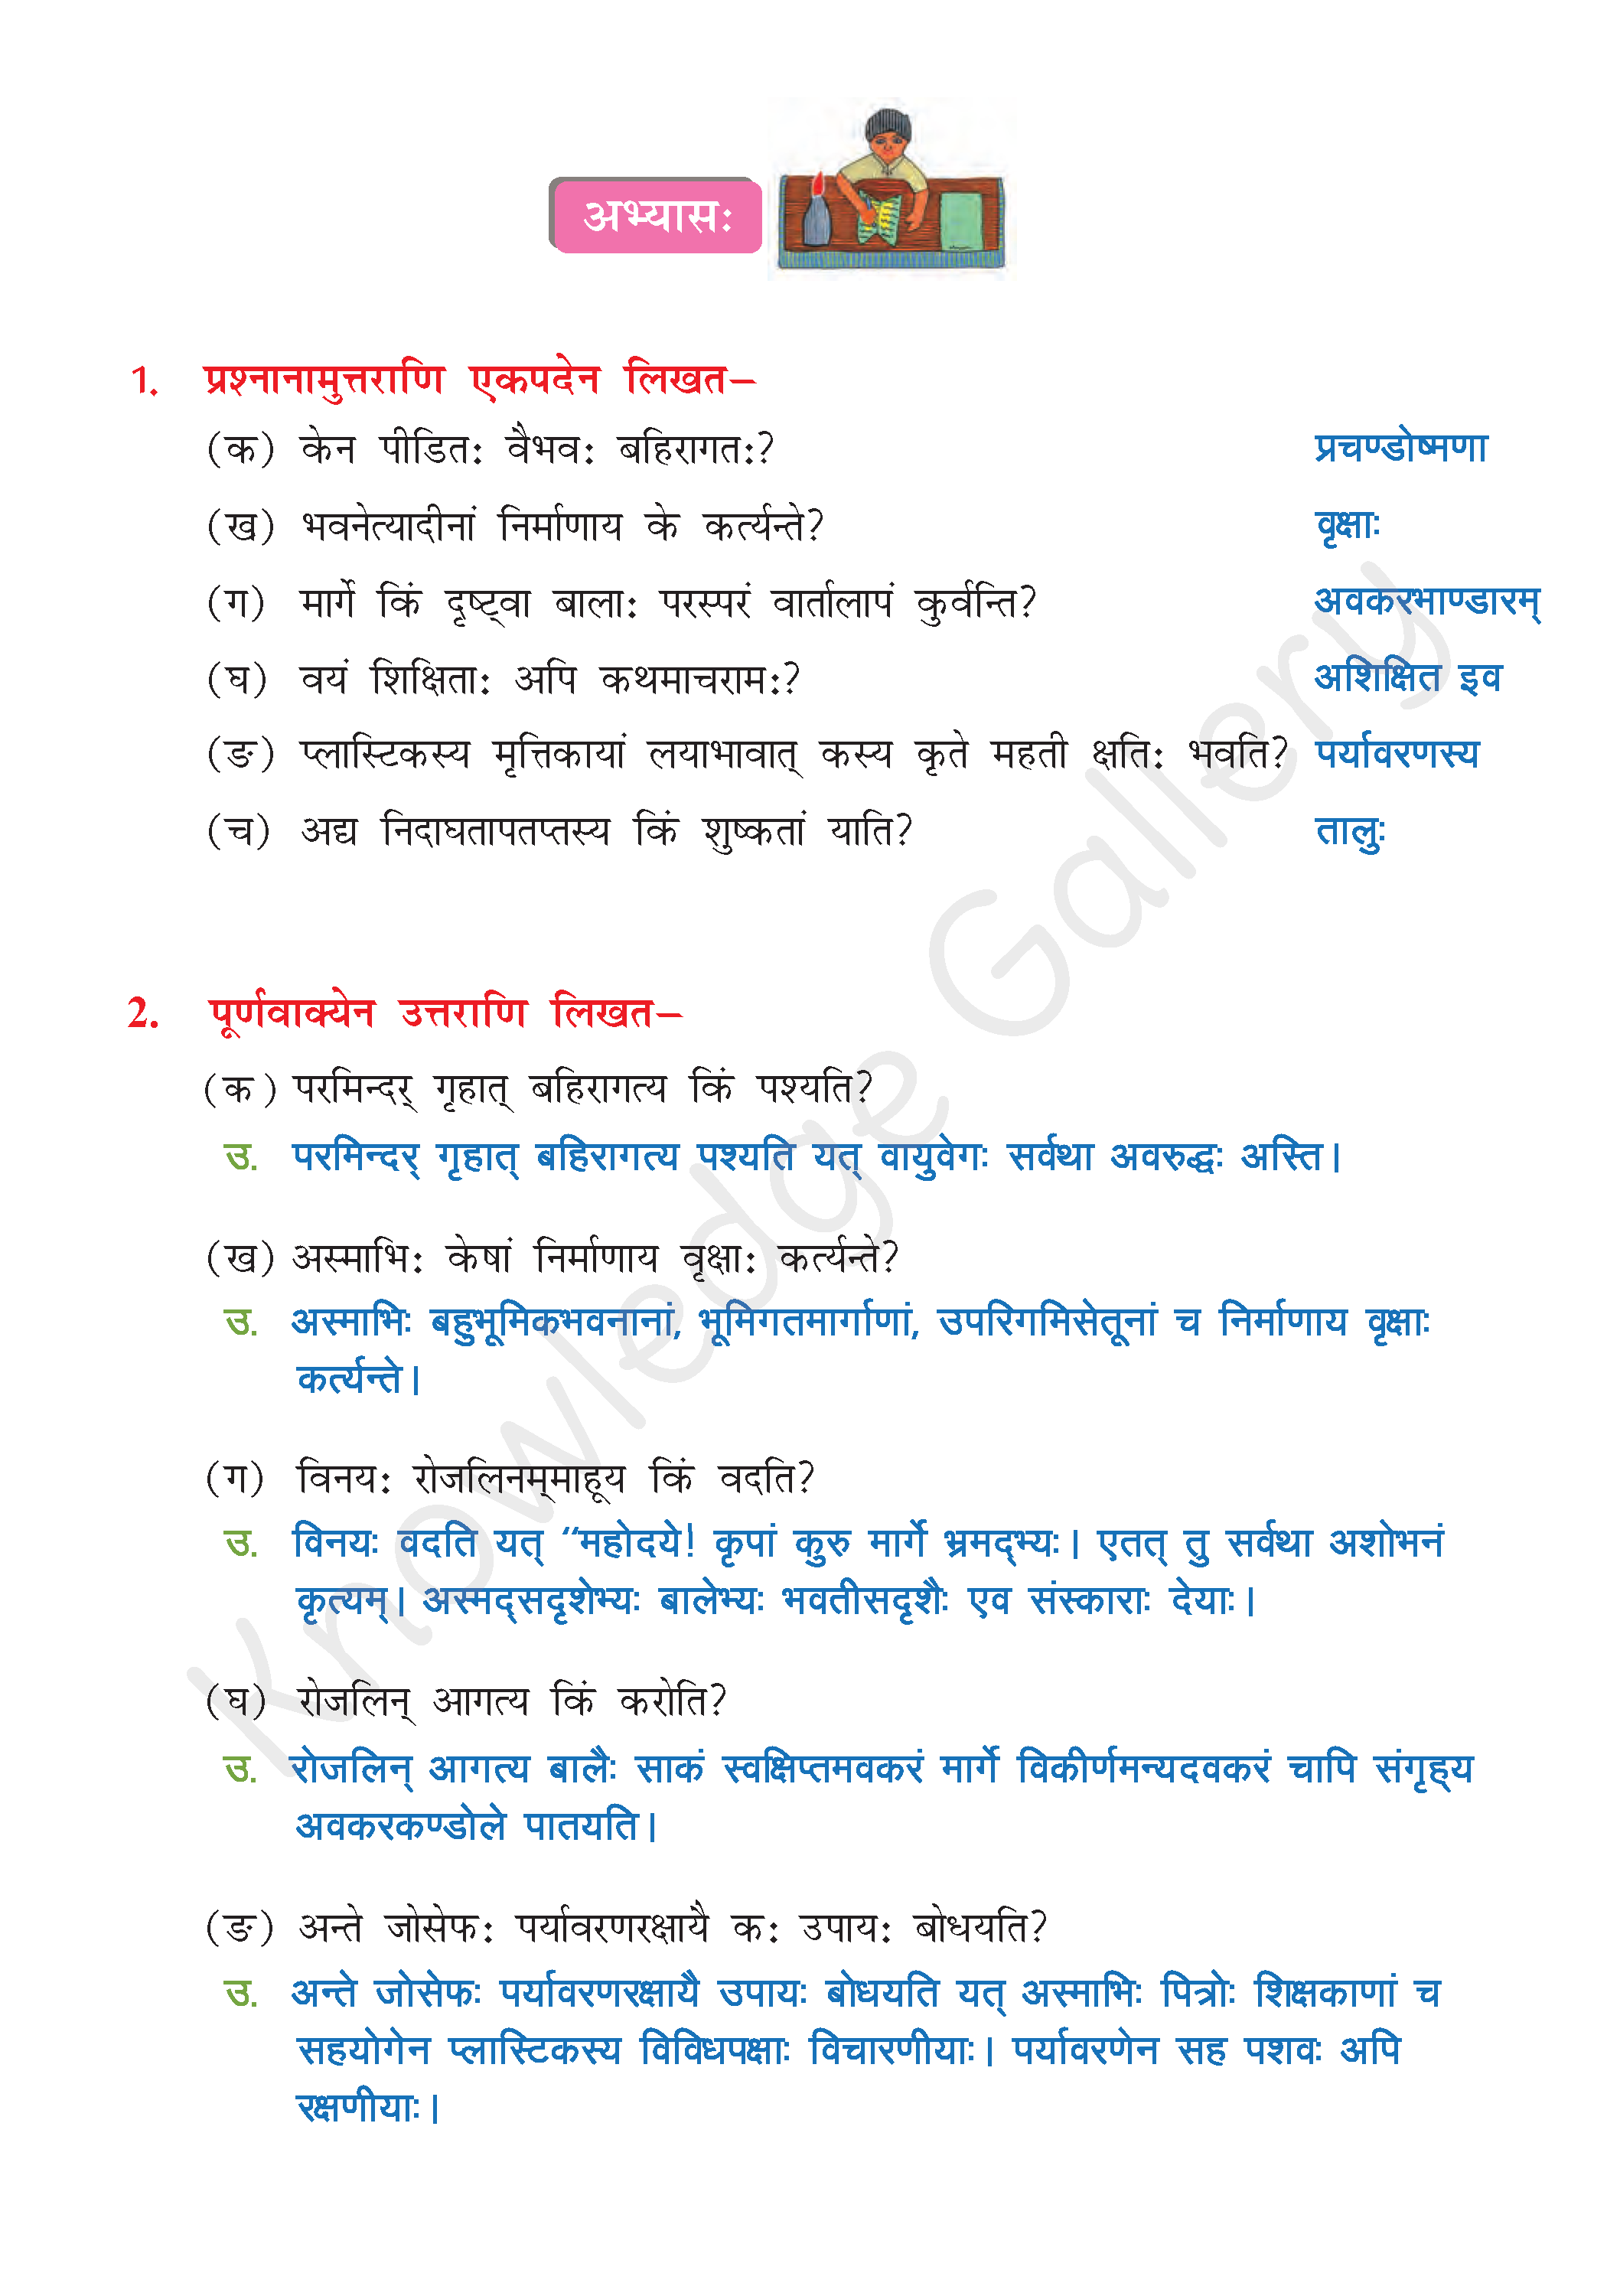 NCERT Solution For Class 8 Sanskrit Chapter 12 part 7